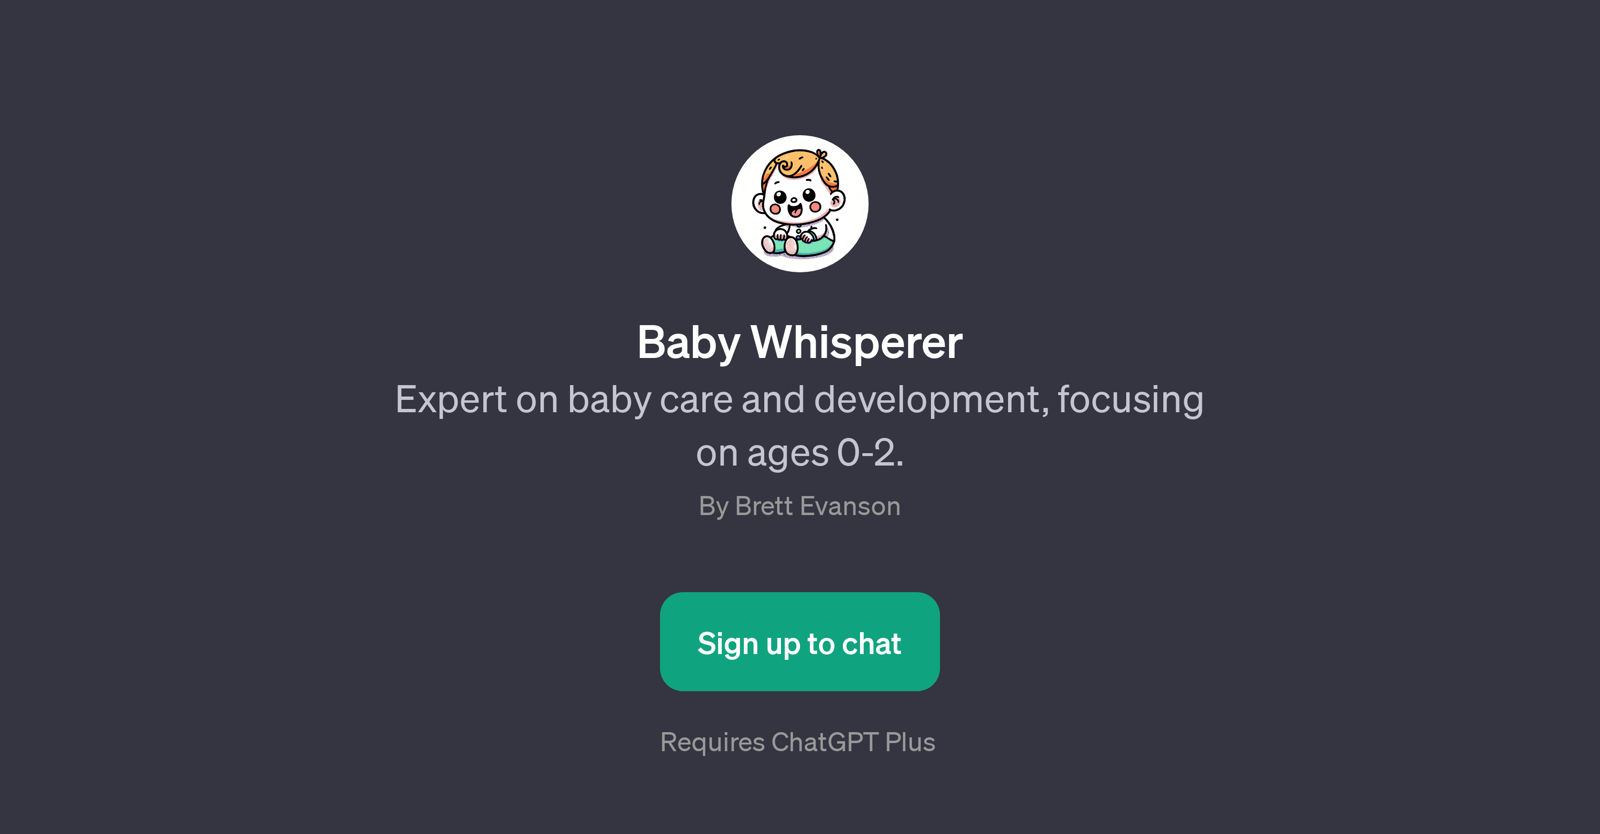 Baby Whisperer website